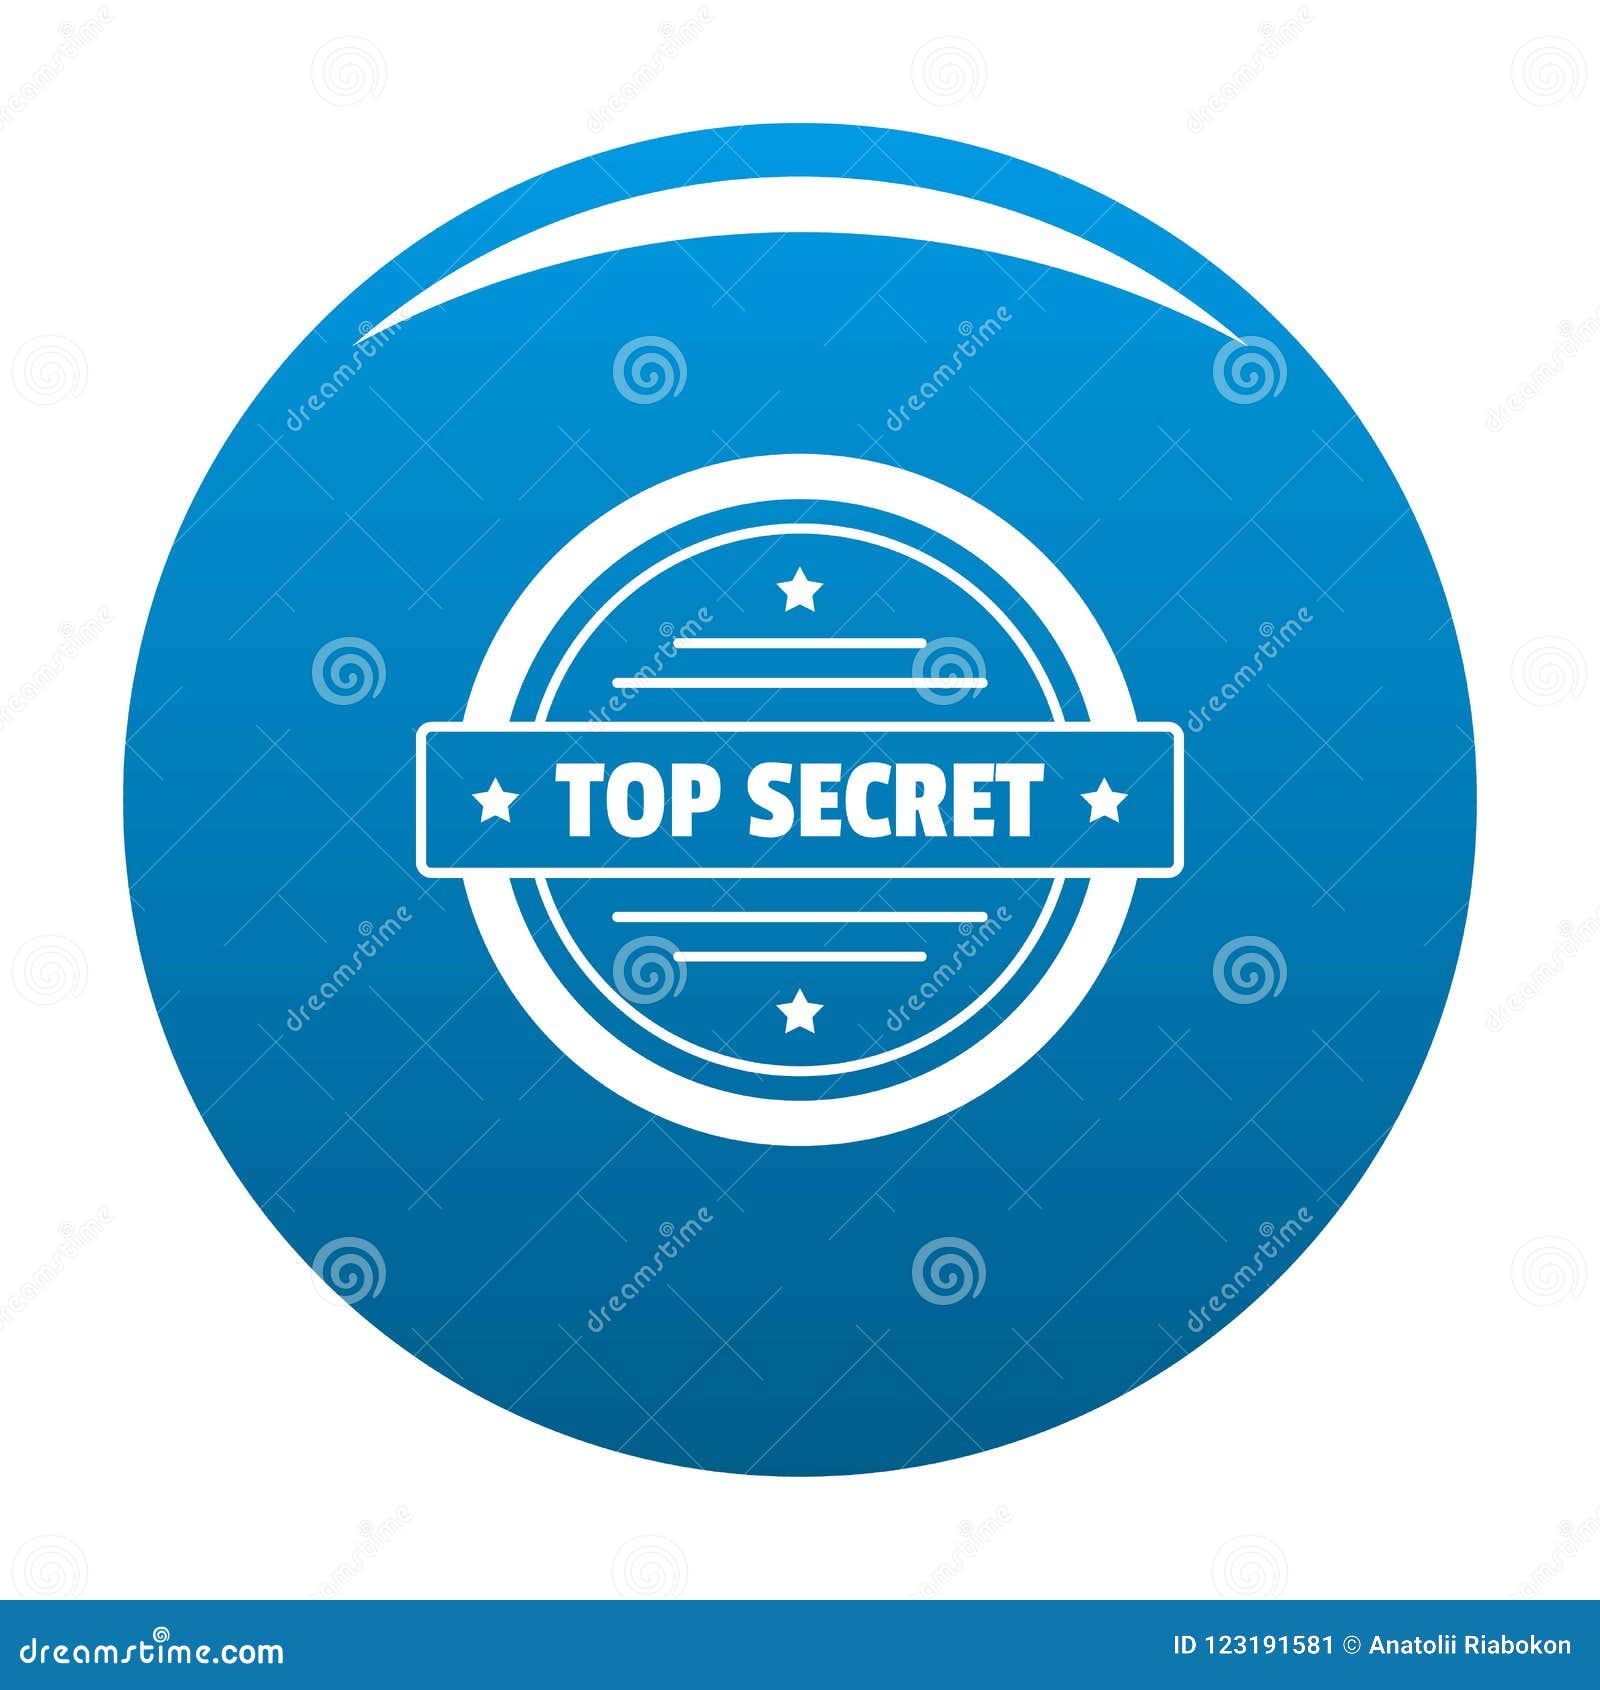 429 Top Secret Logo Stock Illustrations Vectors Clipart